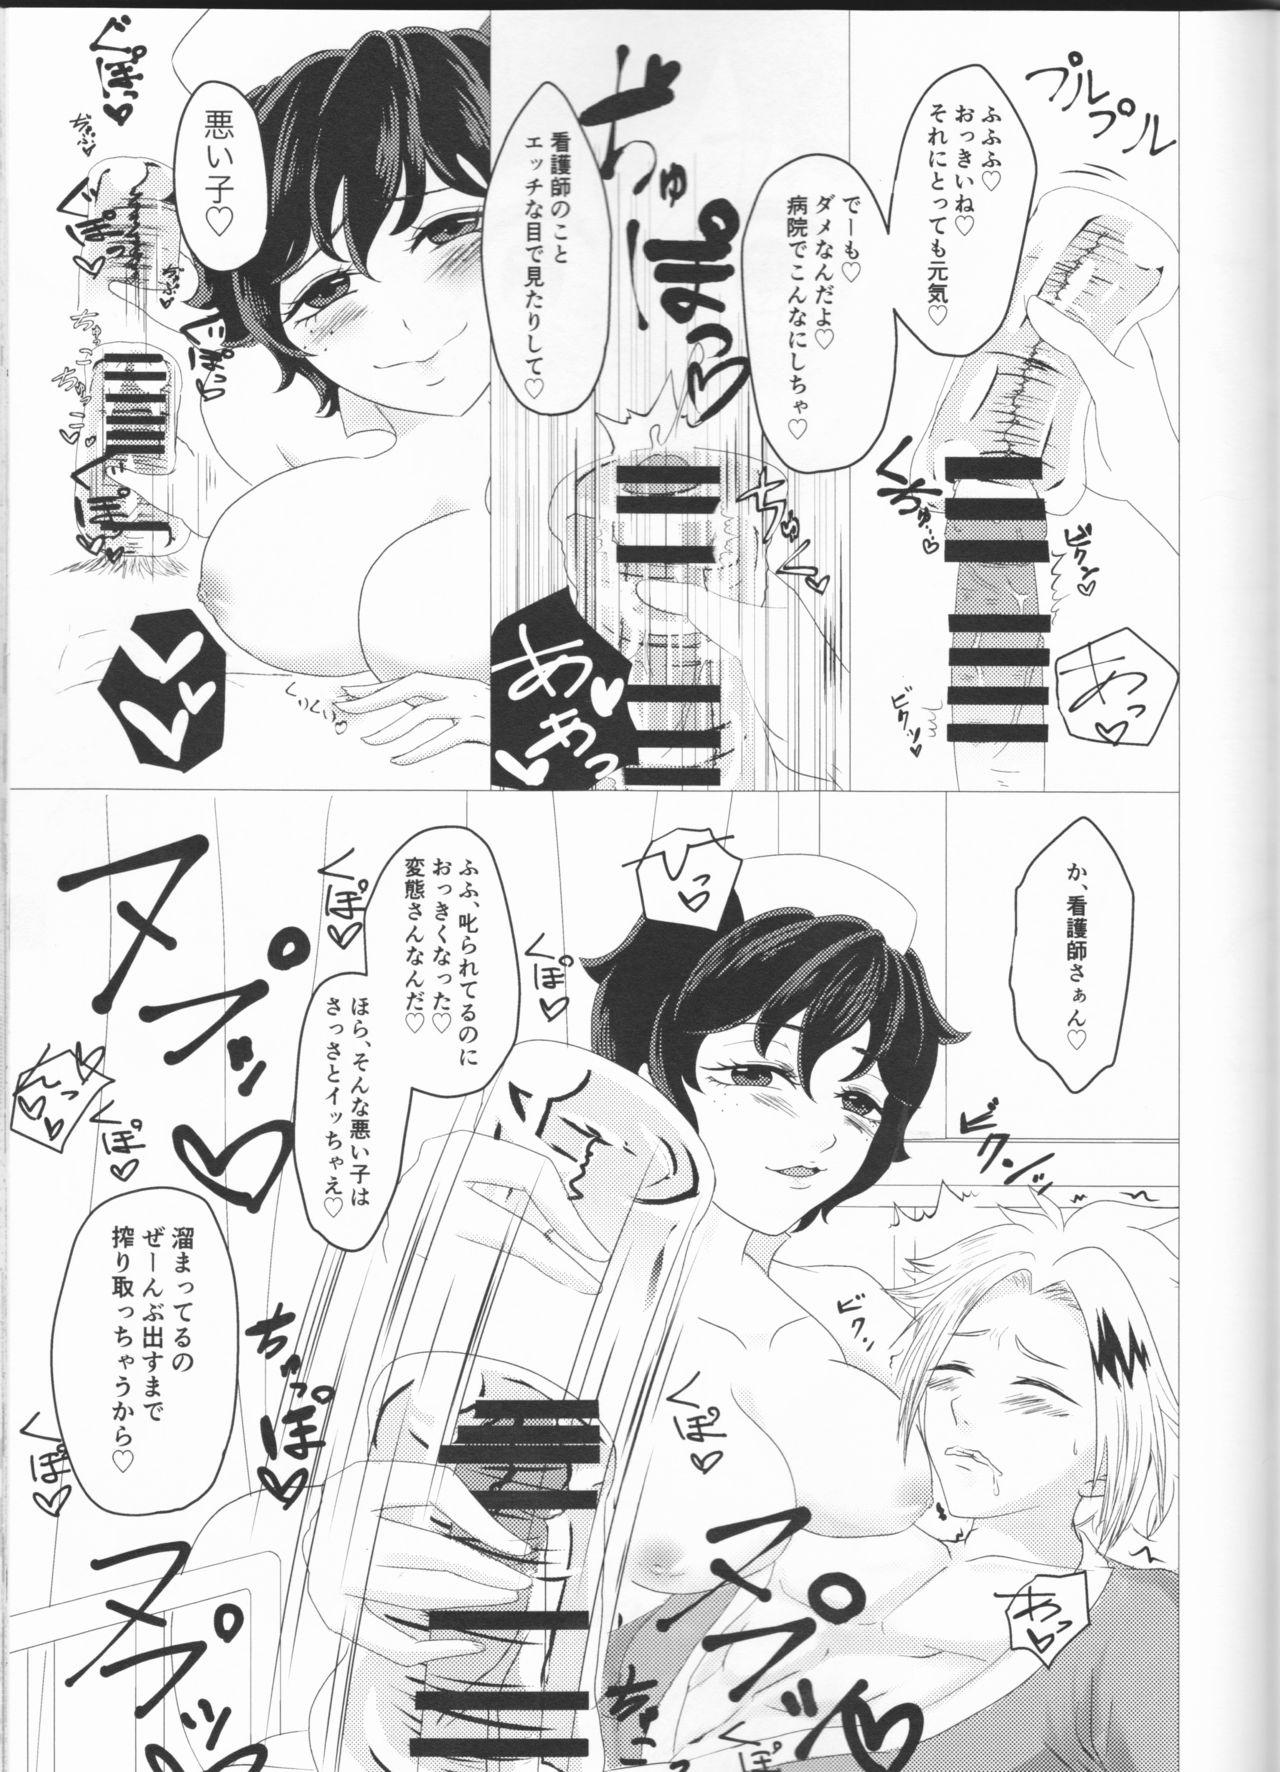 Zorra -kun no hitomi nikanpai! - My hero academia Ginger - Page 8